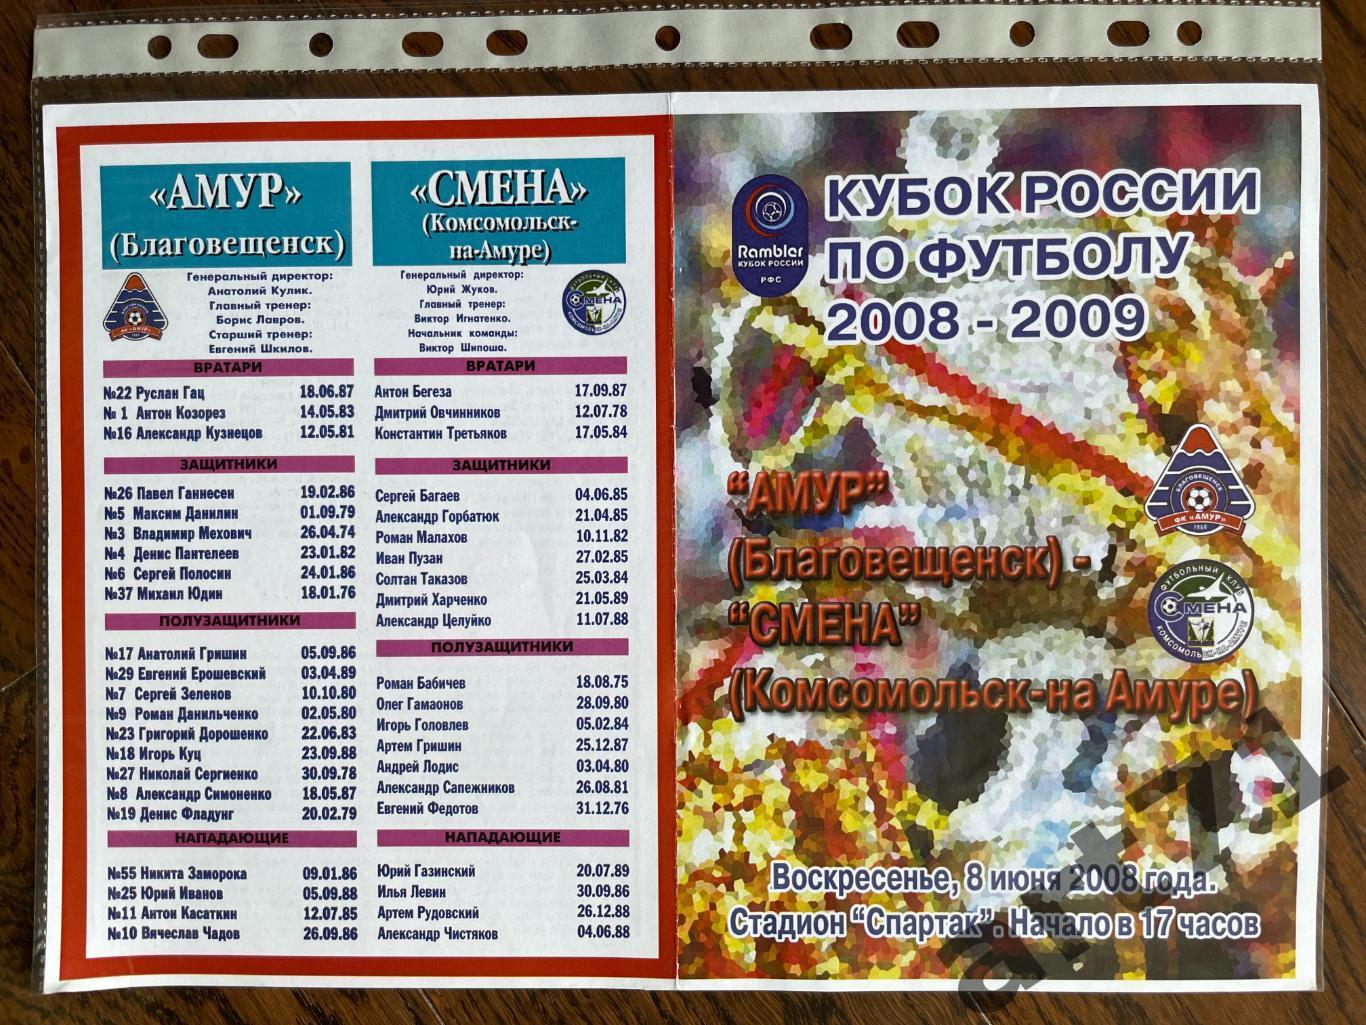 + Амур Благовещенск - Смена Комсомольск-на-Амуре 2008 Кубок России